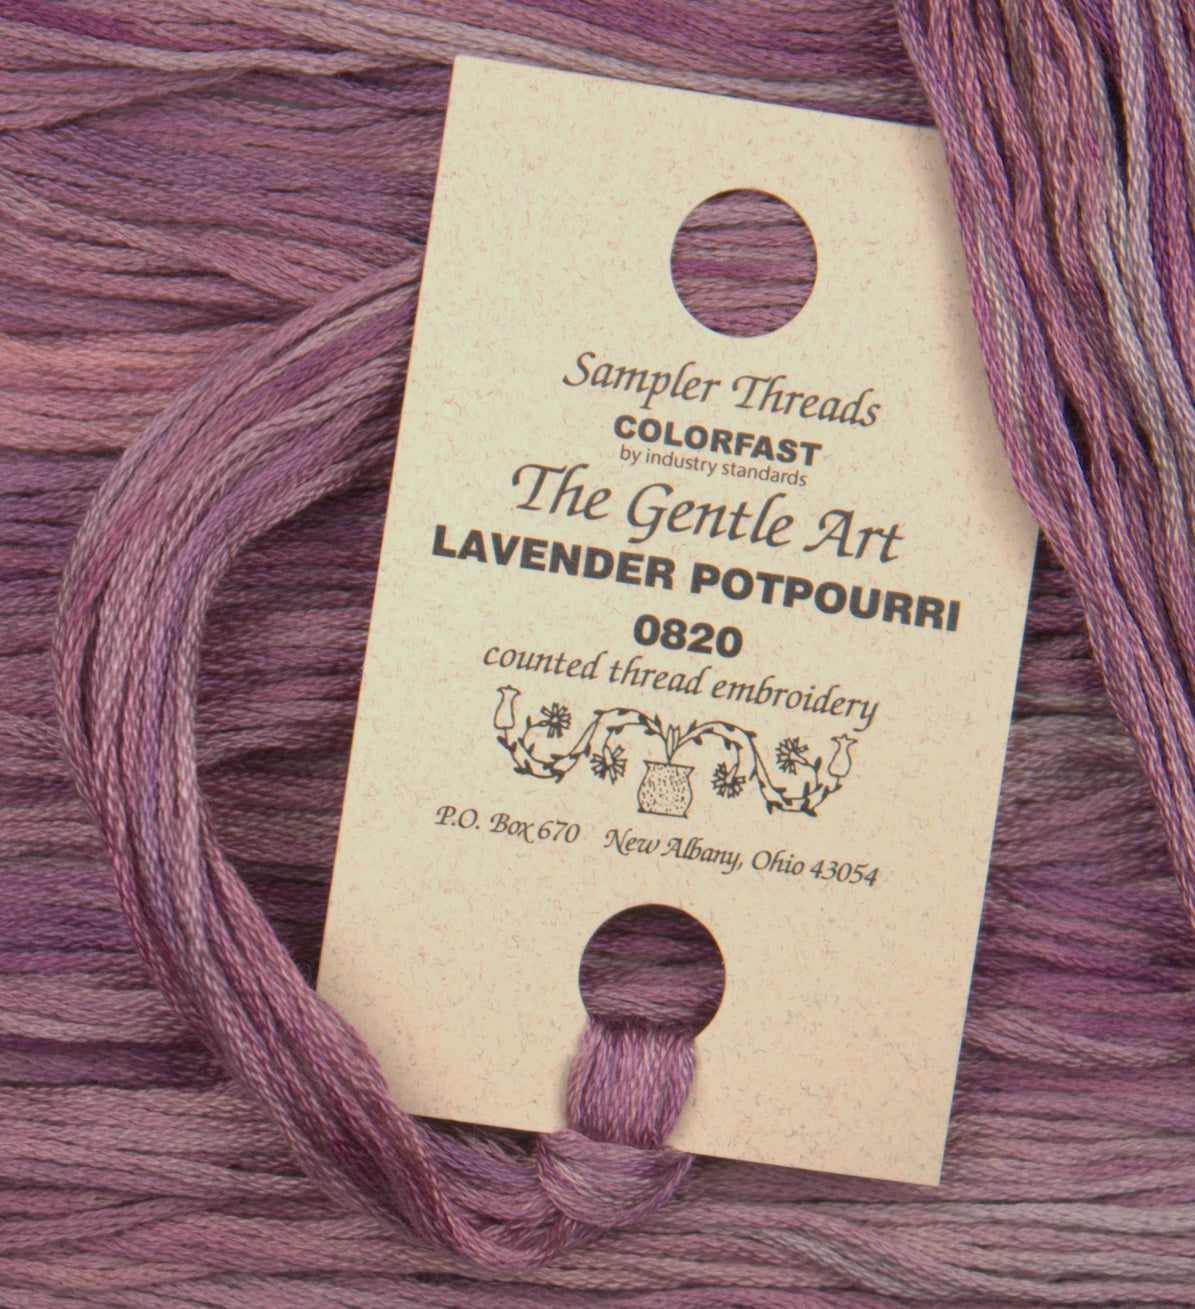 Lavender Potpourri 0820